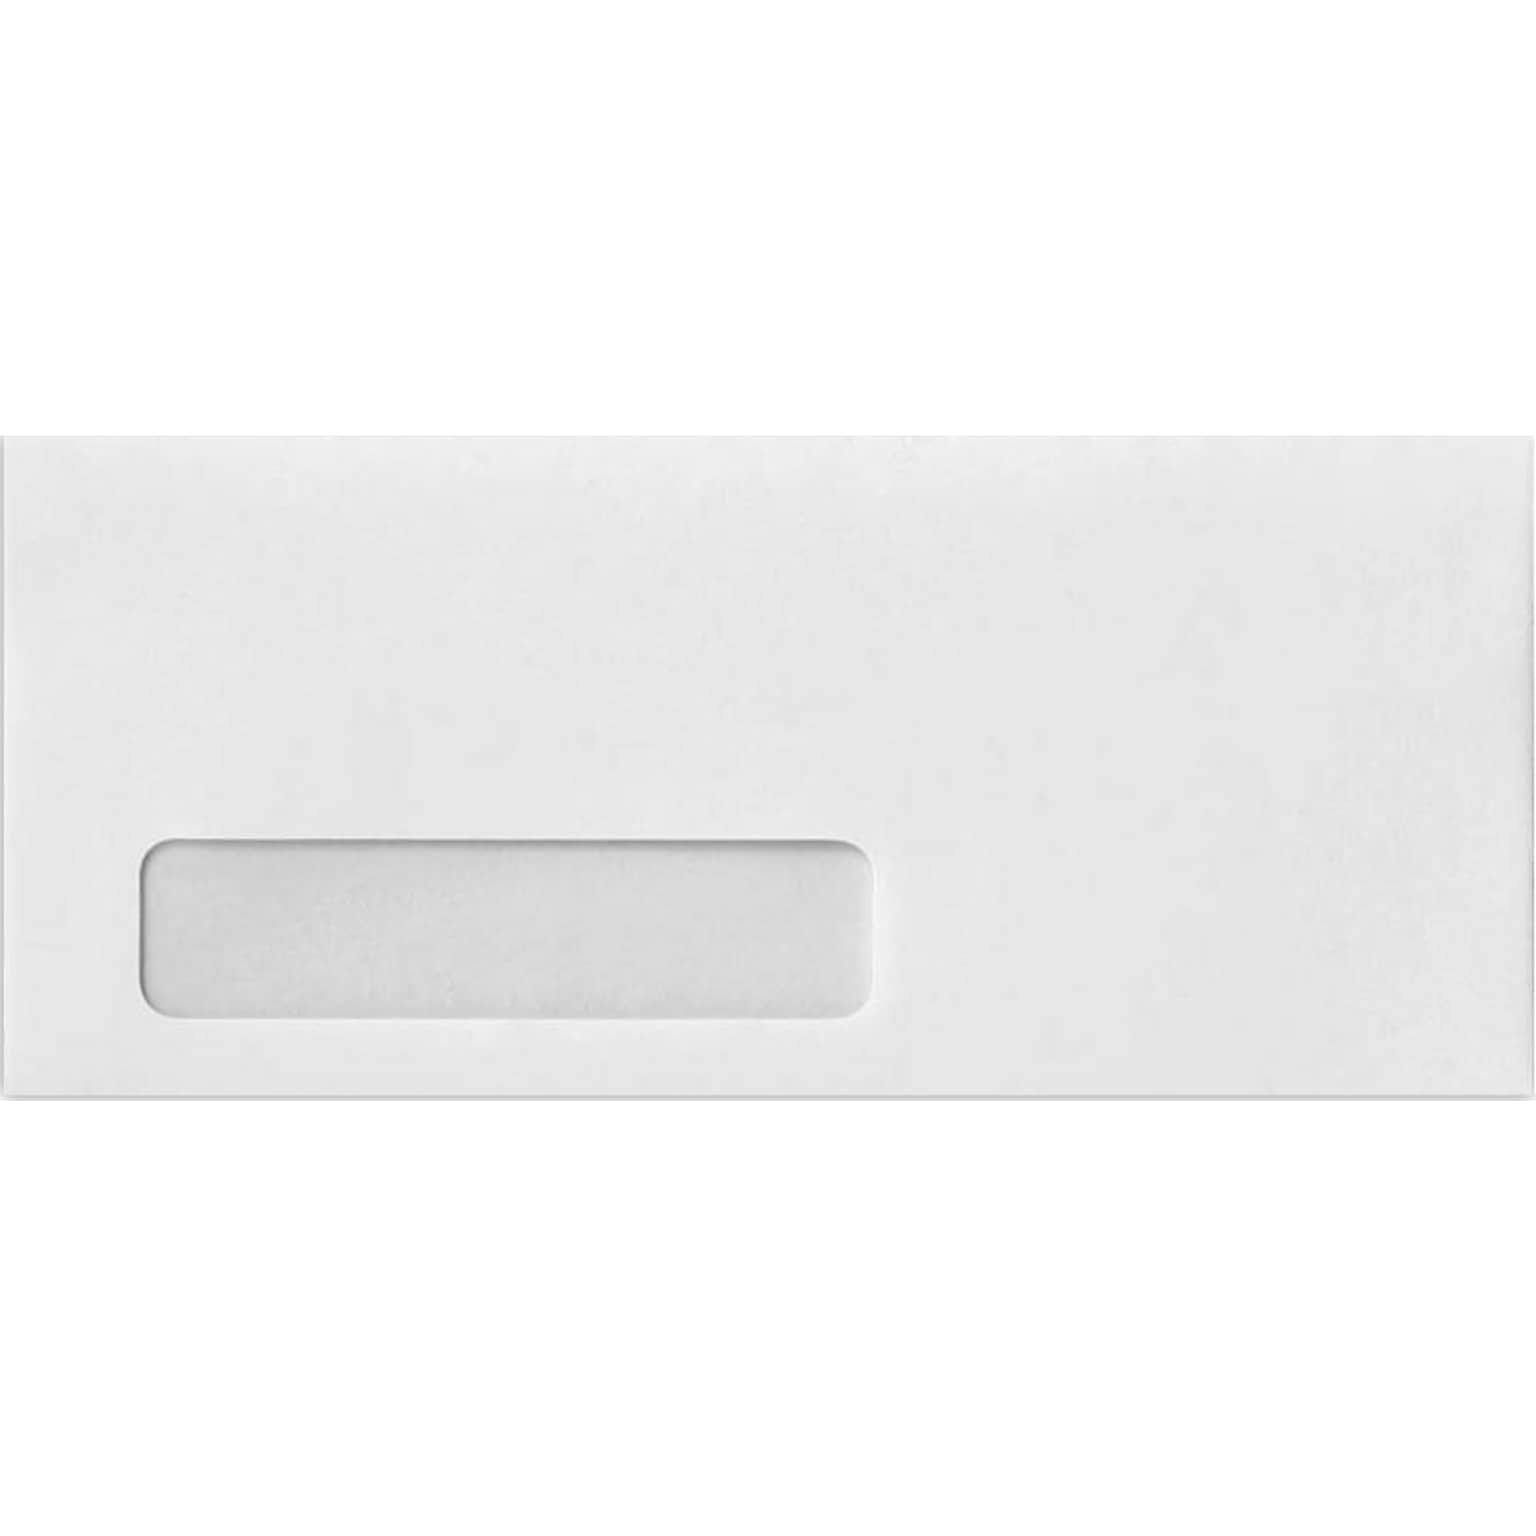 JAM Paper #10 Window Envelopes, 4 1/8 x 9 1/2, White w/Peel & Seel, 1000/Pack (75761-1M)